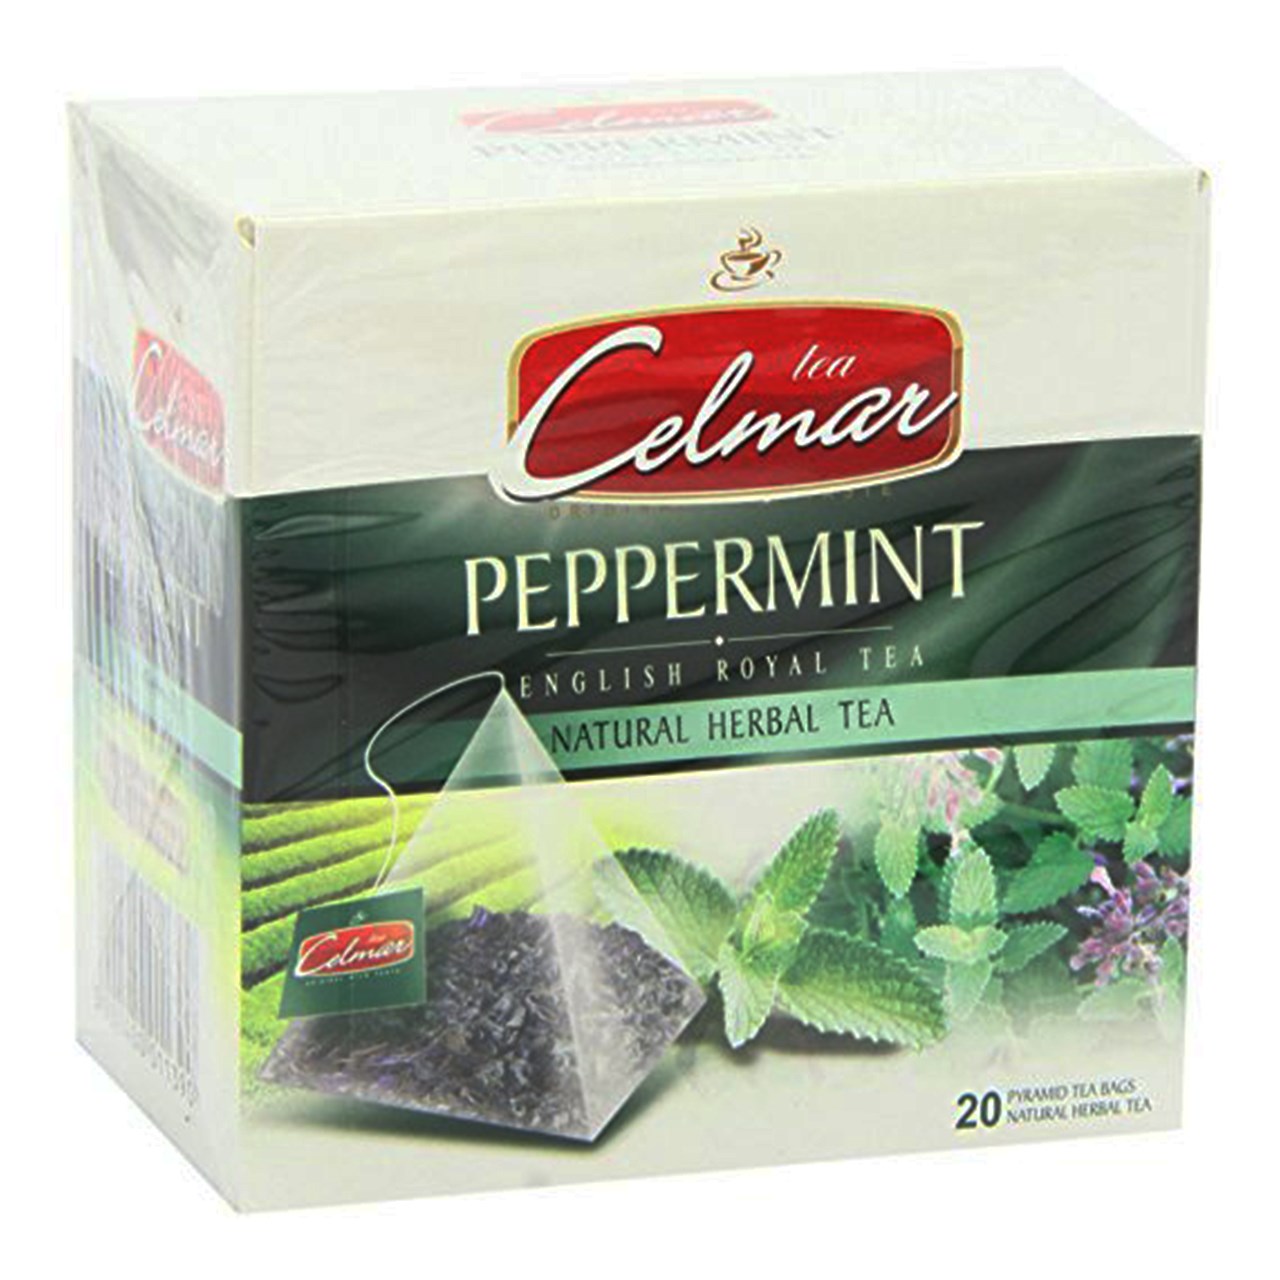 بسته چای نعناع فلفلی سلمار مدل Peppermint